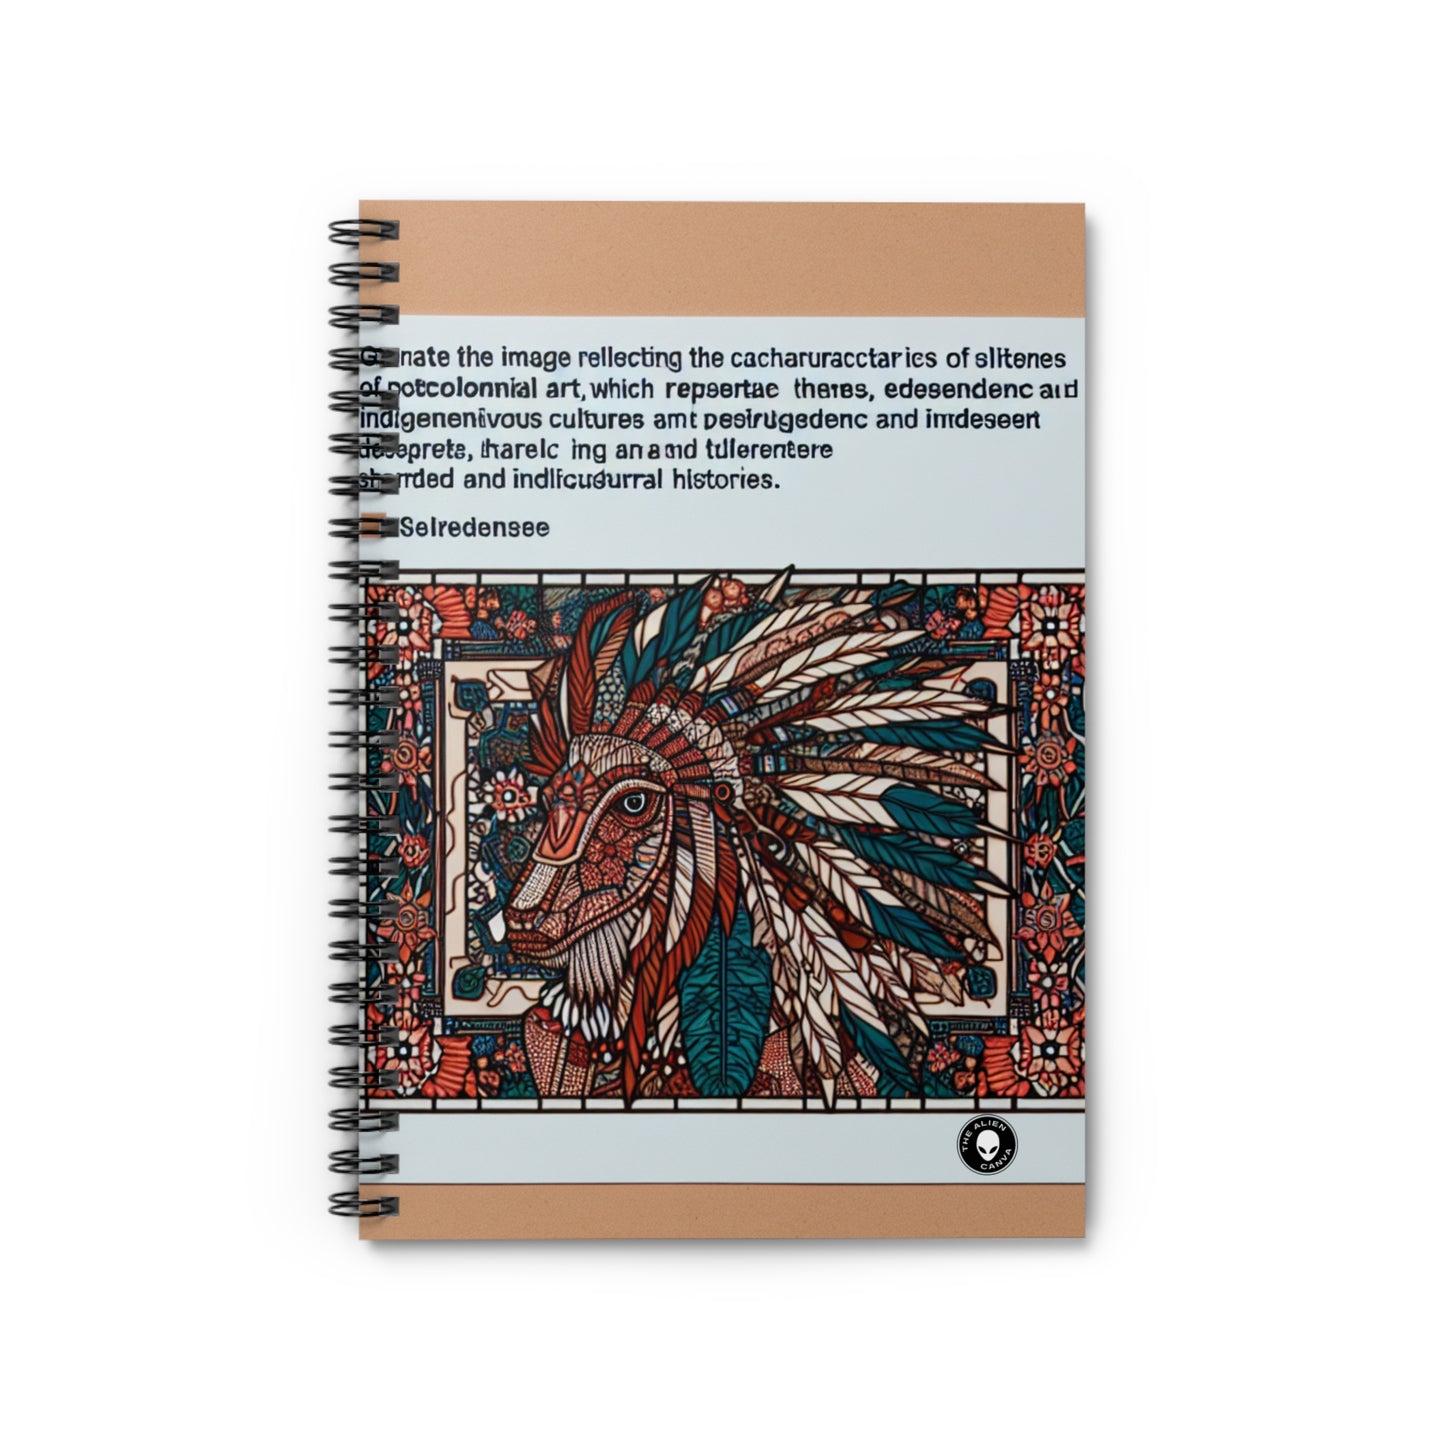 "Resiliencia revelada: una celebración poscolonial" - El cuaderno de espiral alienígena (línea reglada) Arte poscolonial